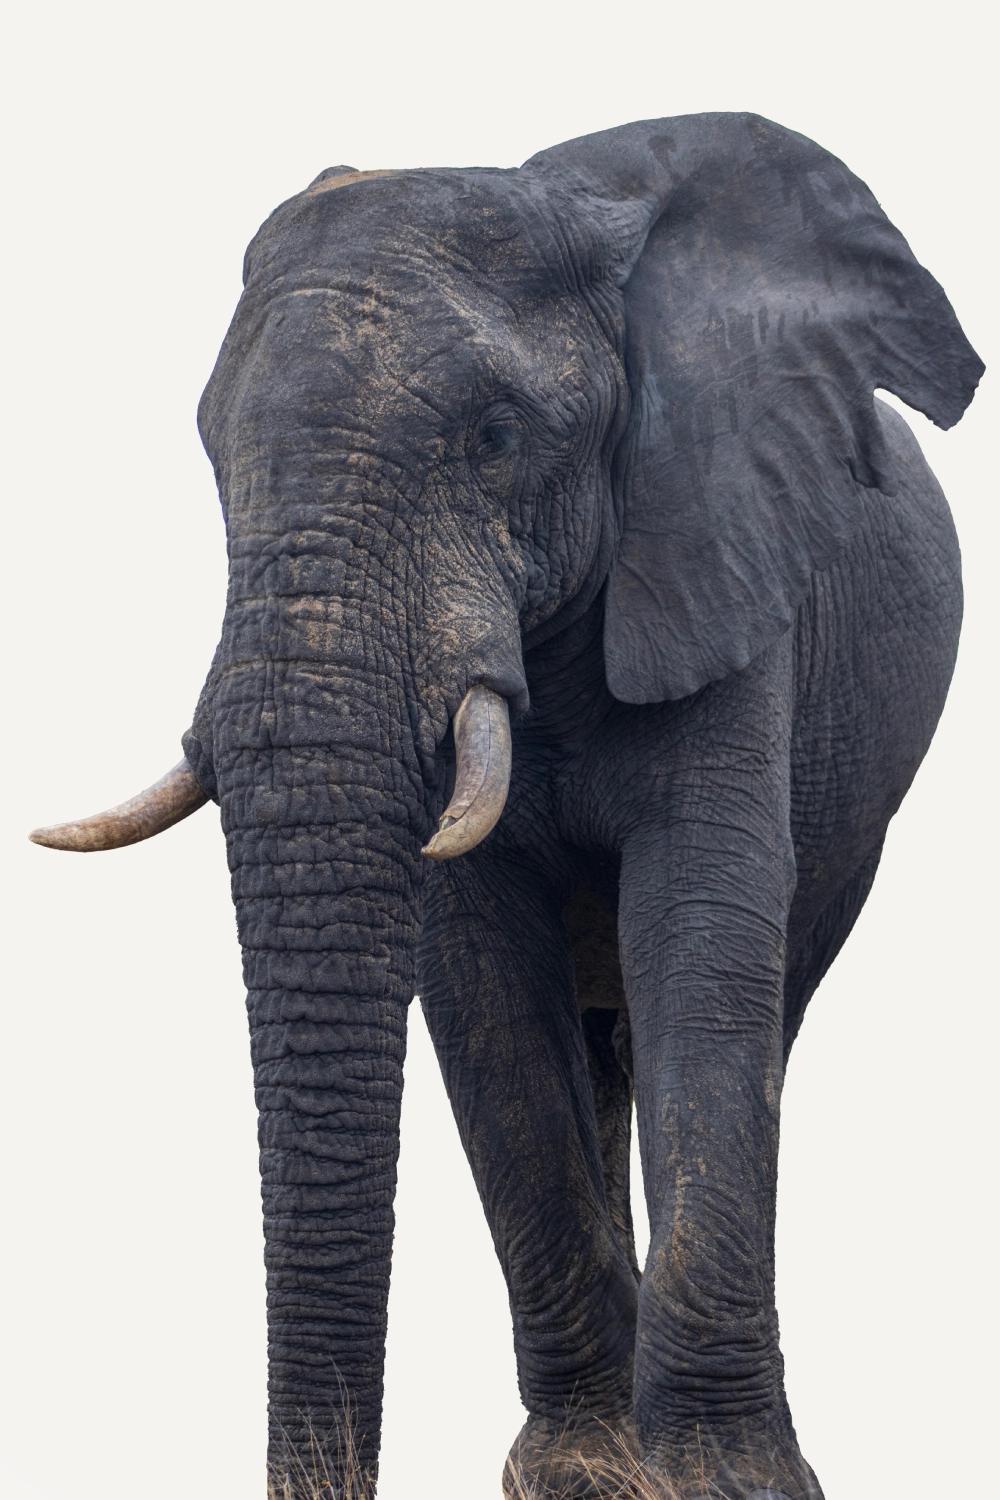 Kruger Elephant Portrait